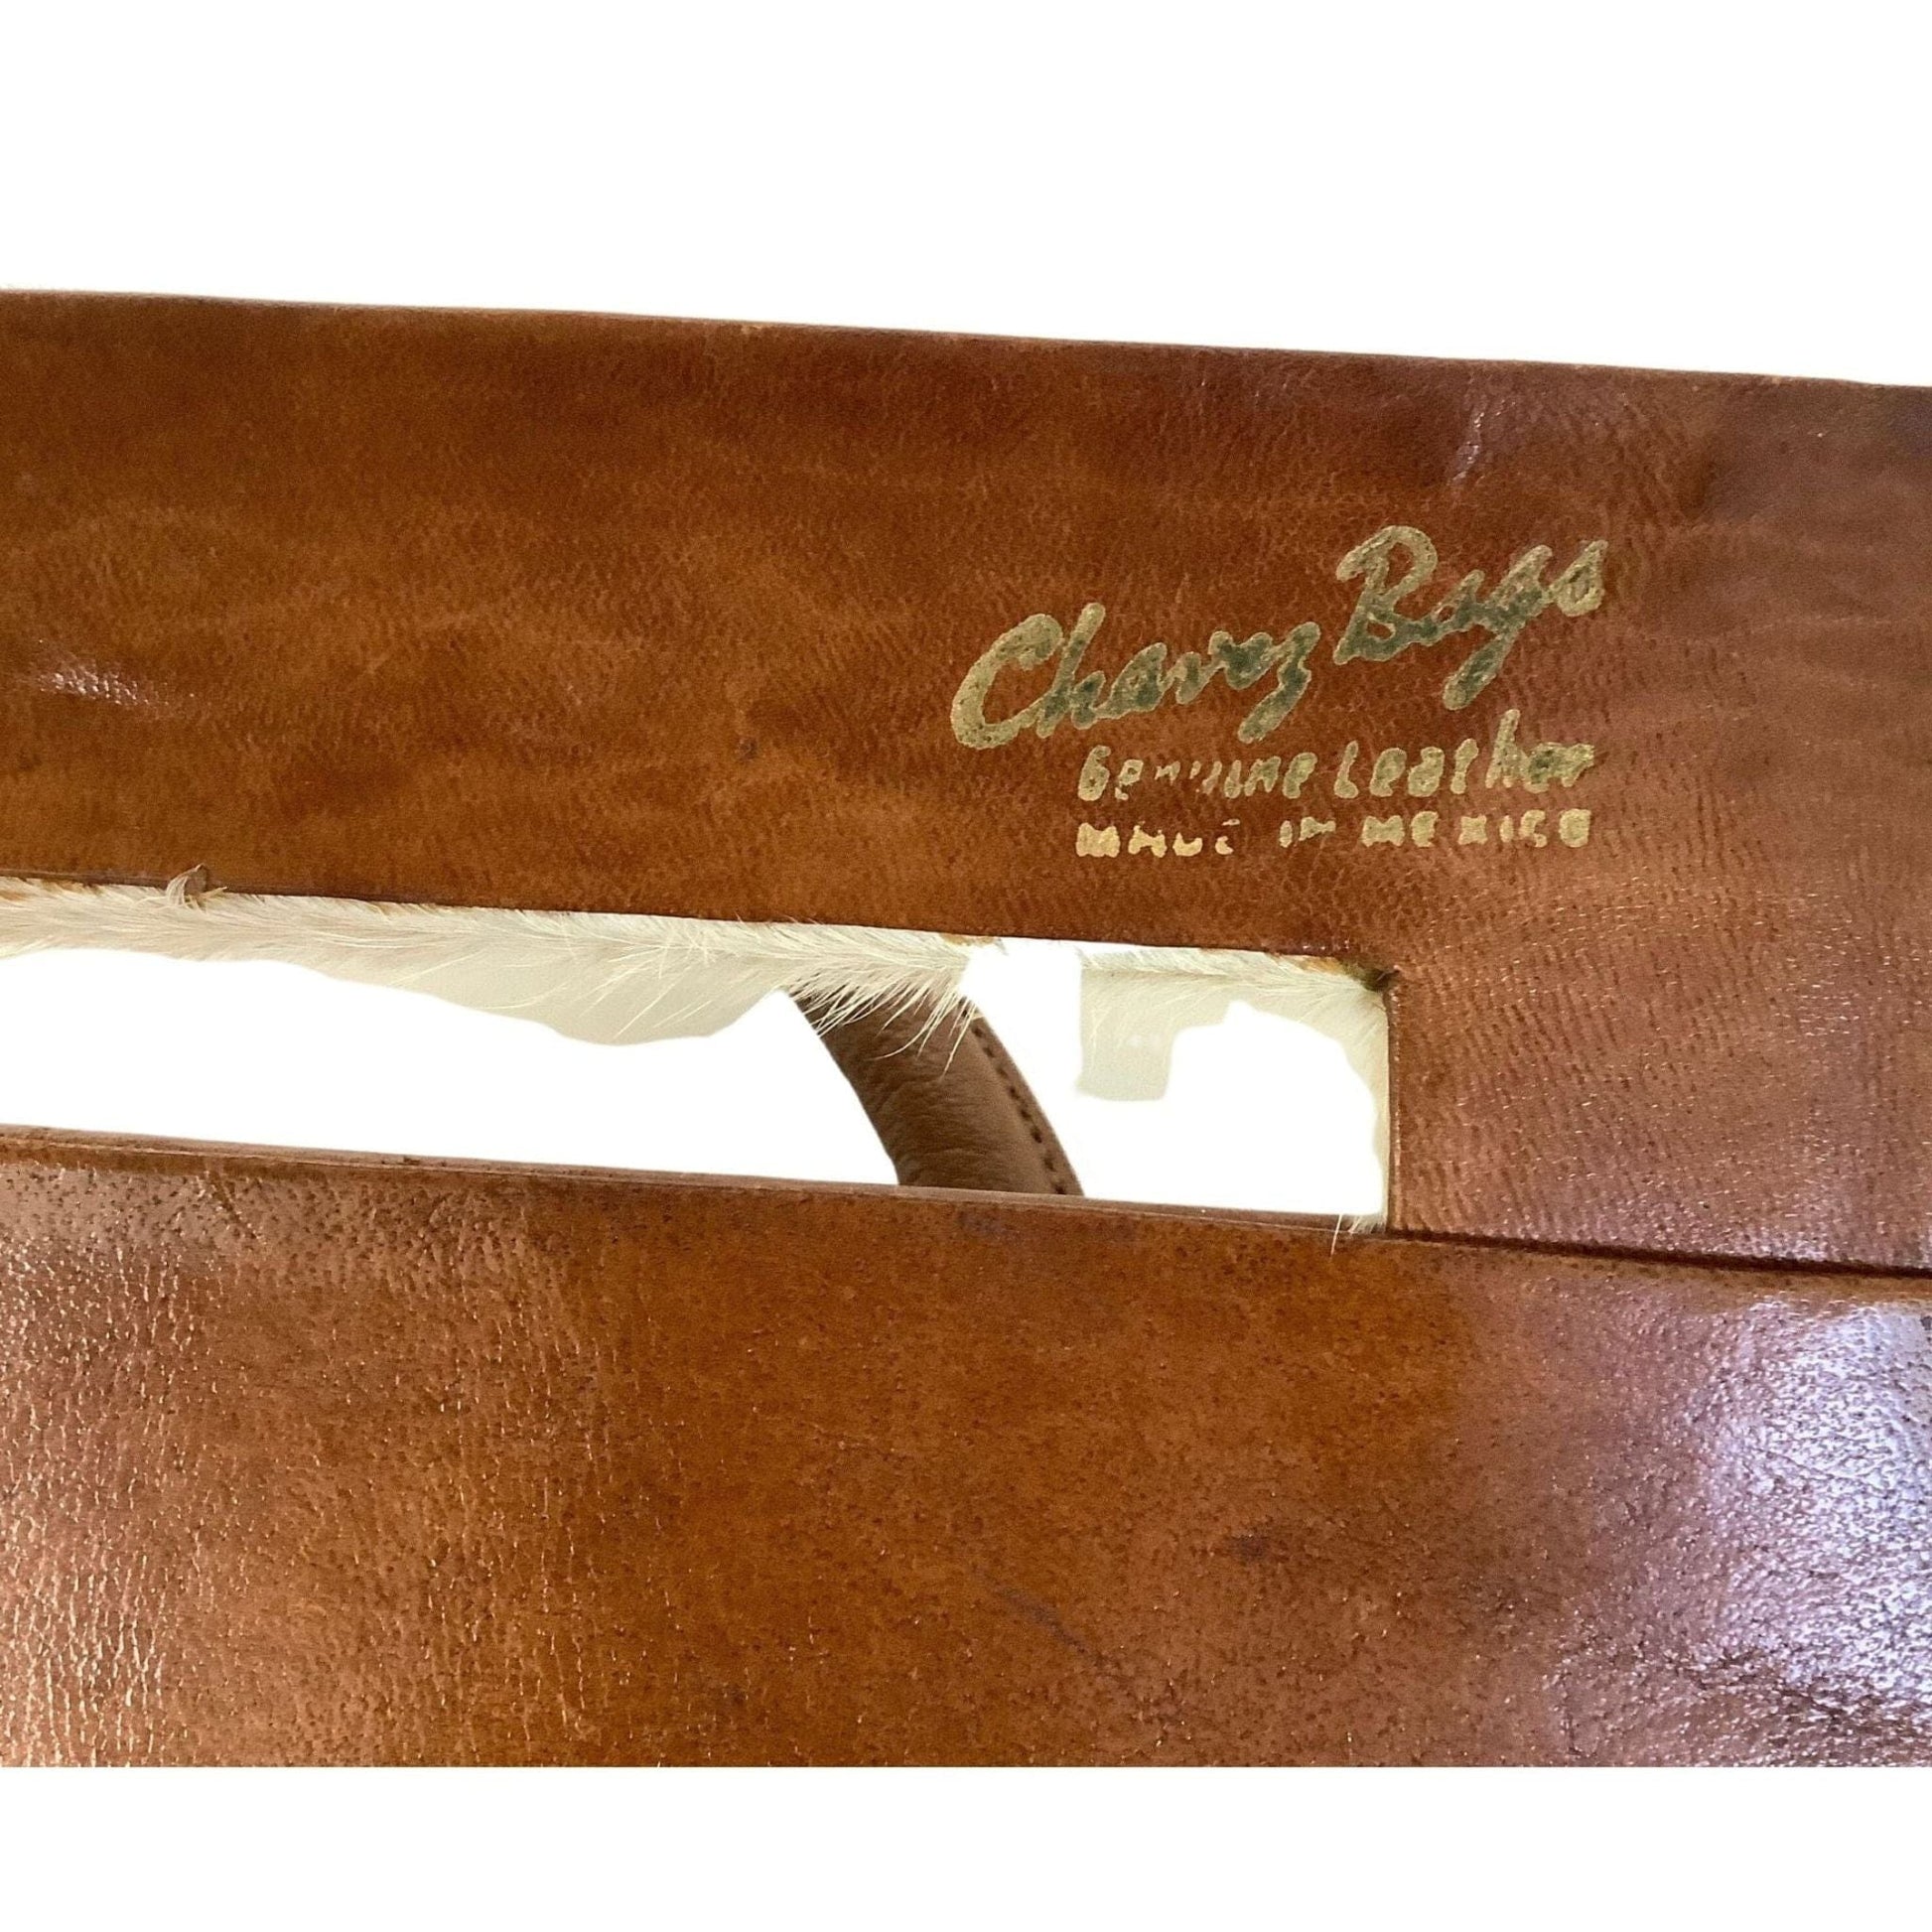 1940s Tooled Handbag Tan / Leather / Vintage 1940s